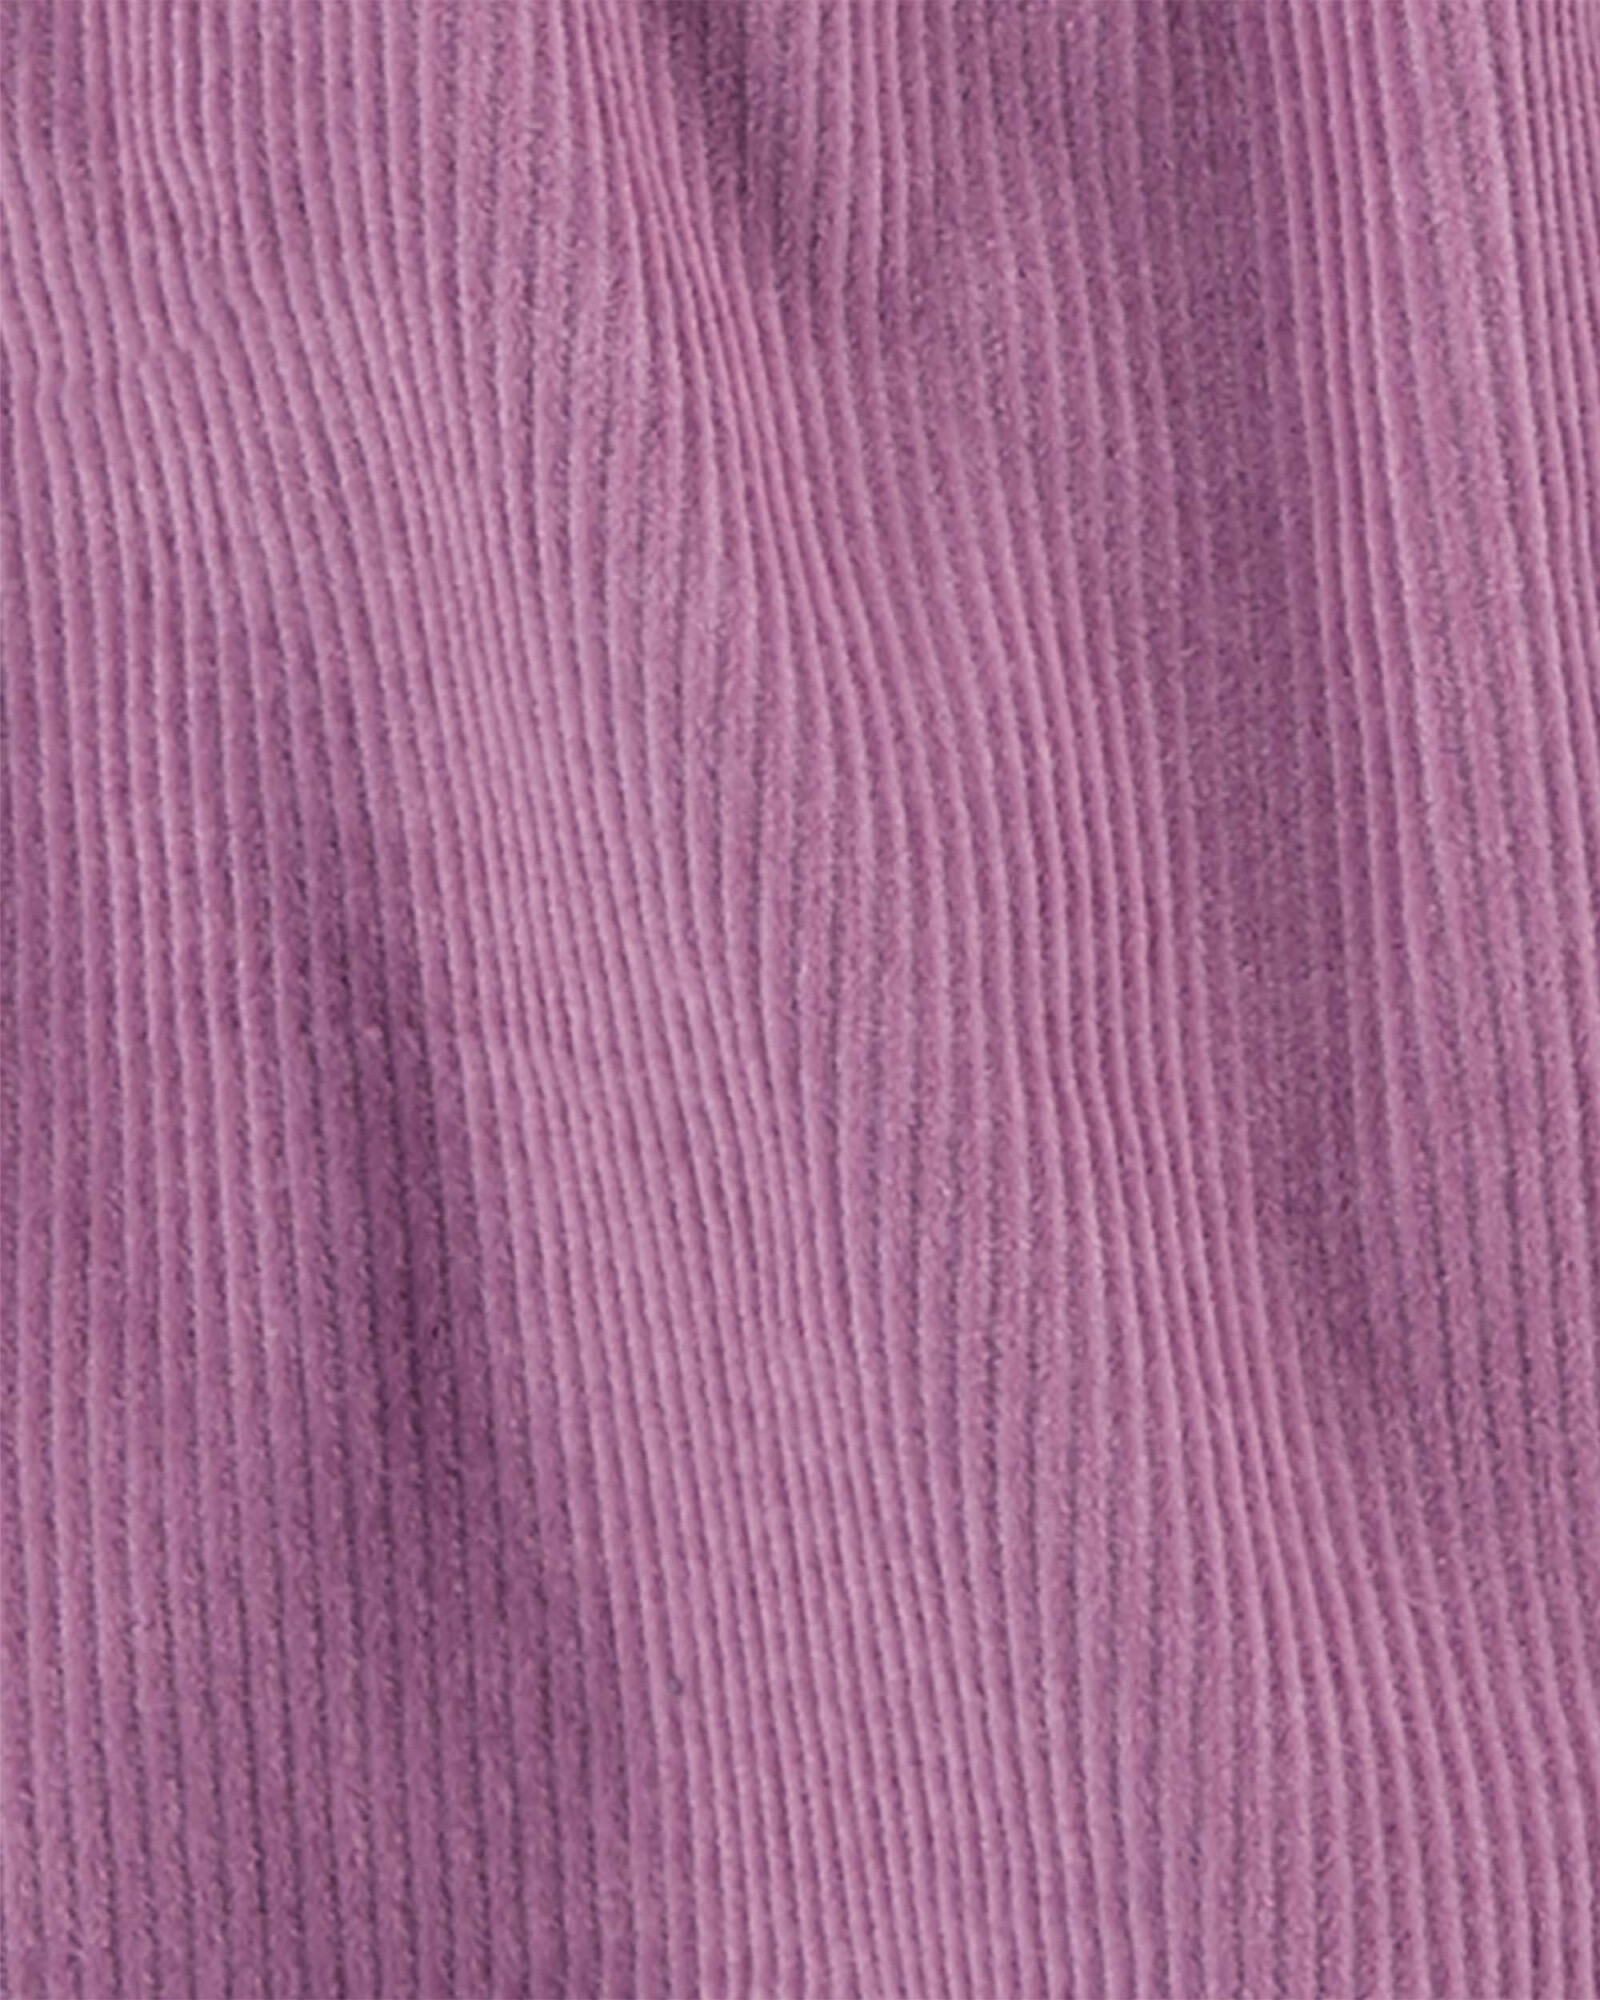 Set tres piezas jumper de pana, blusa y medias de algodón, diseño gatita Sin color